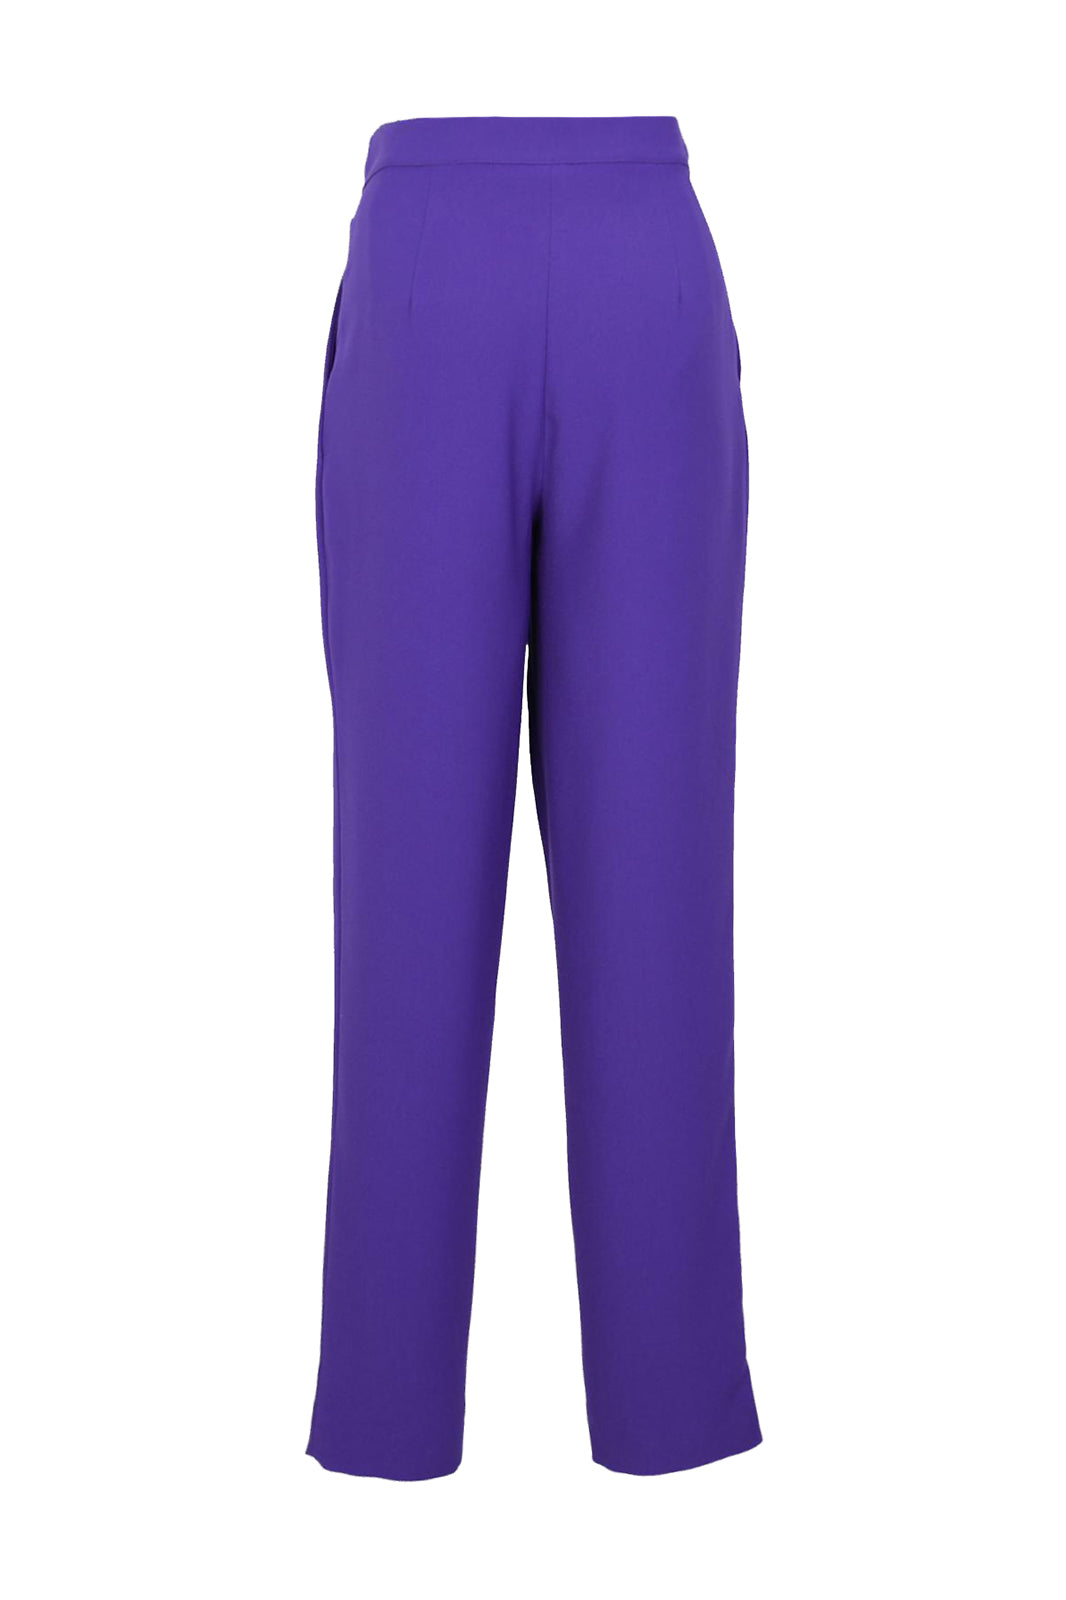 Marvel Purple Pleated Crepe Women's Pants